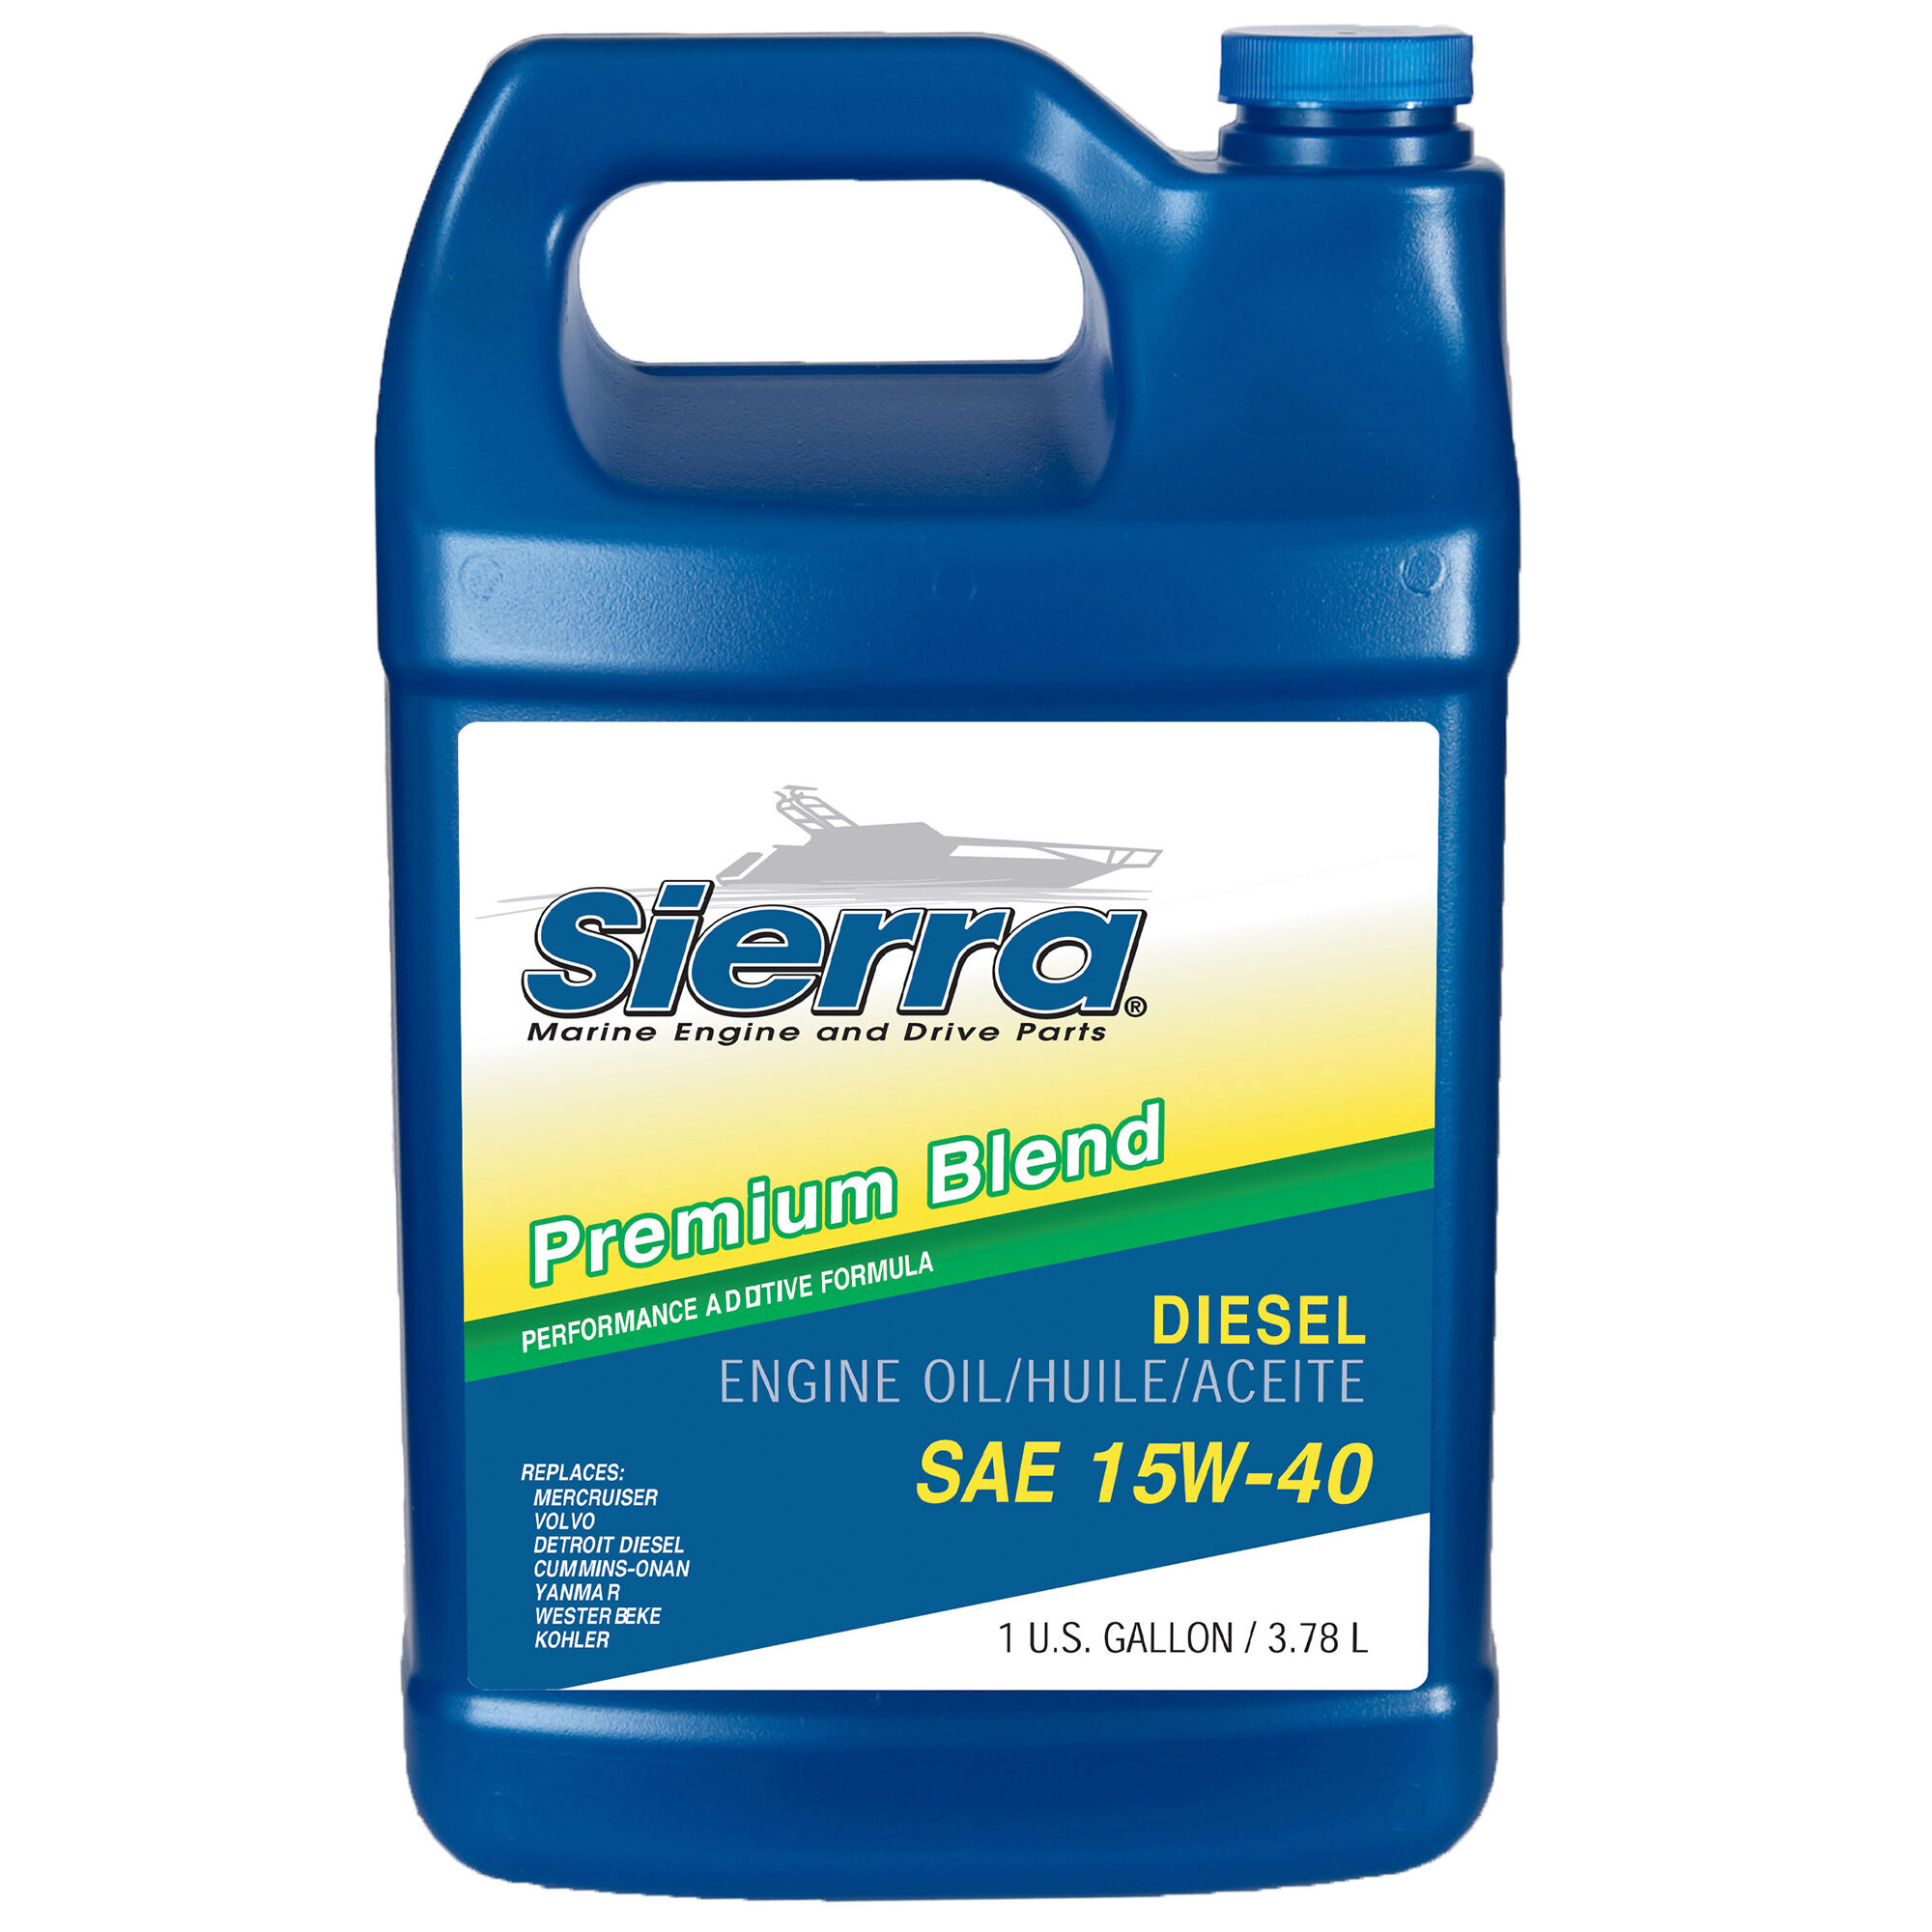 Sierra 15W-40 Diesel Engine Oil For Mercury Marine/Volvo, Part #18-9553-3, 6-Pack